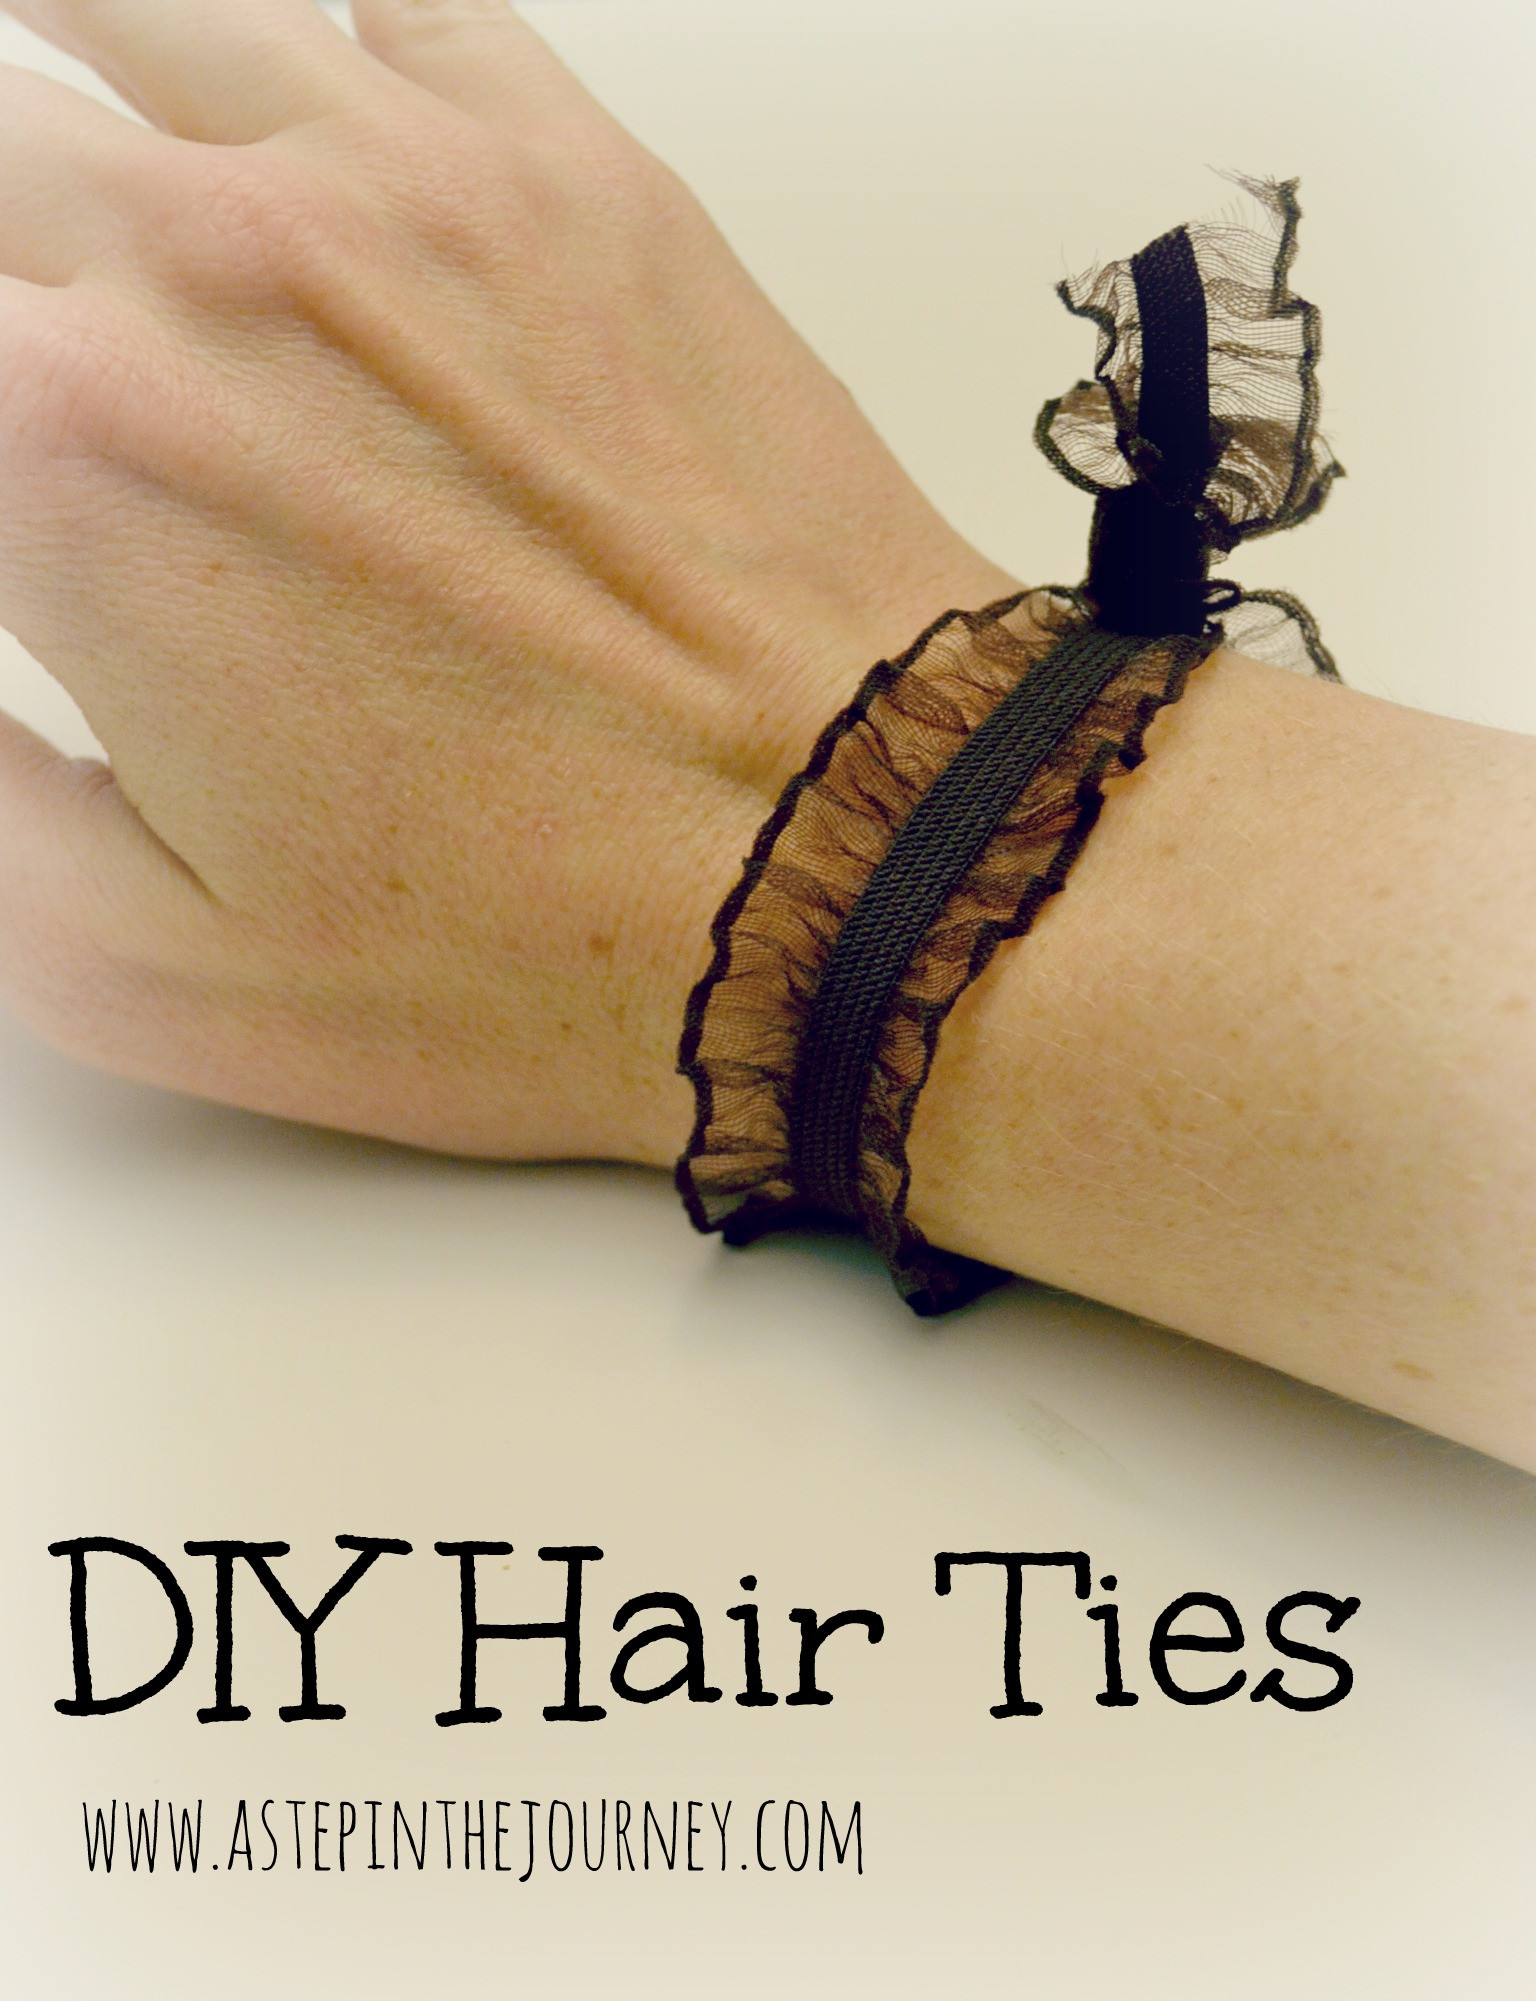 Best ideas about DIY Elastic Hair Ties
. Save or Pin DIY Elastic Hair Tie Now.